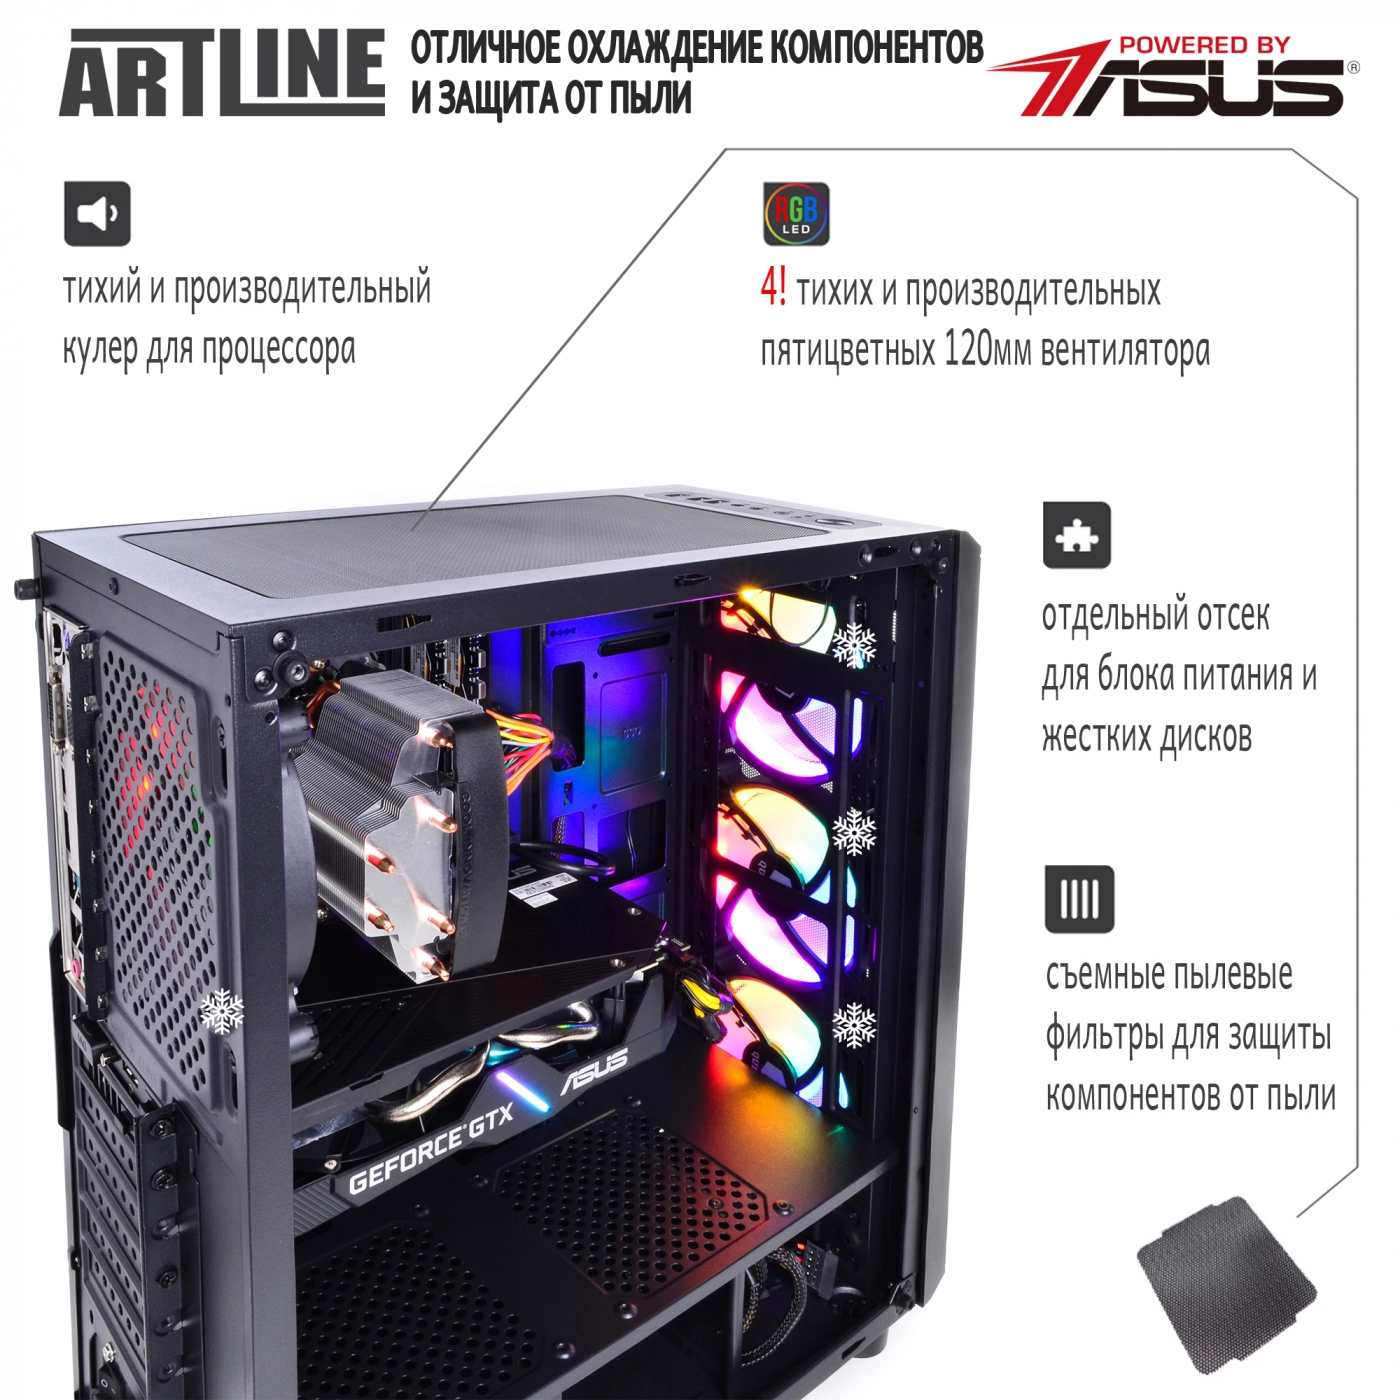 Купить Компьютер ARTLINE Gaming X53v16 - фото 3